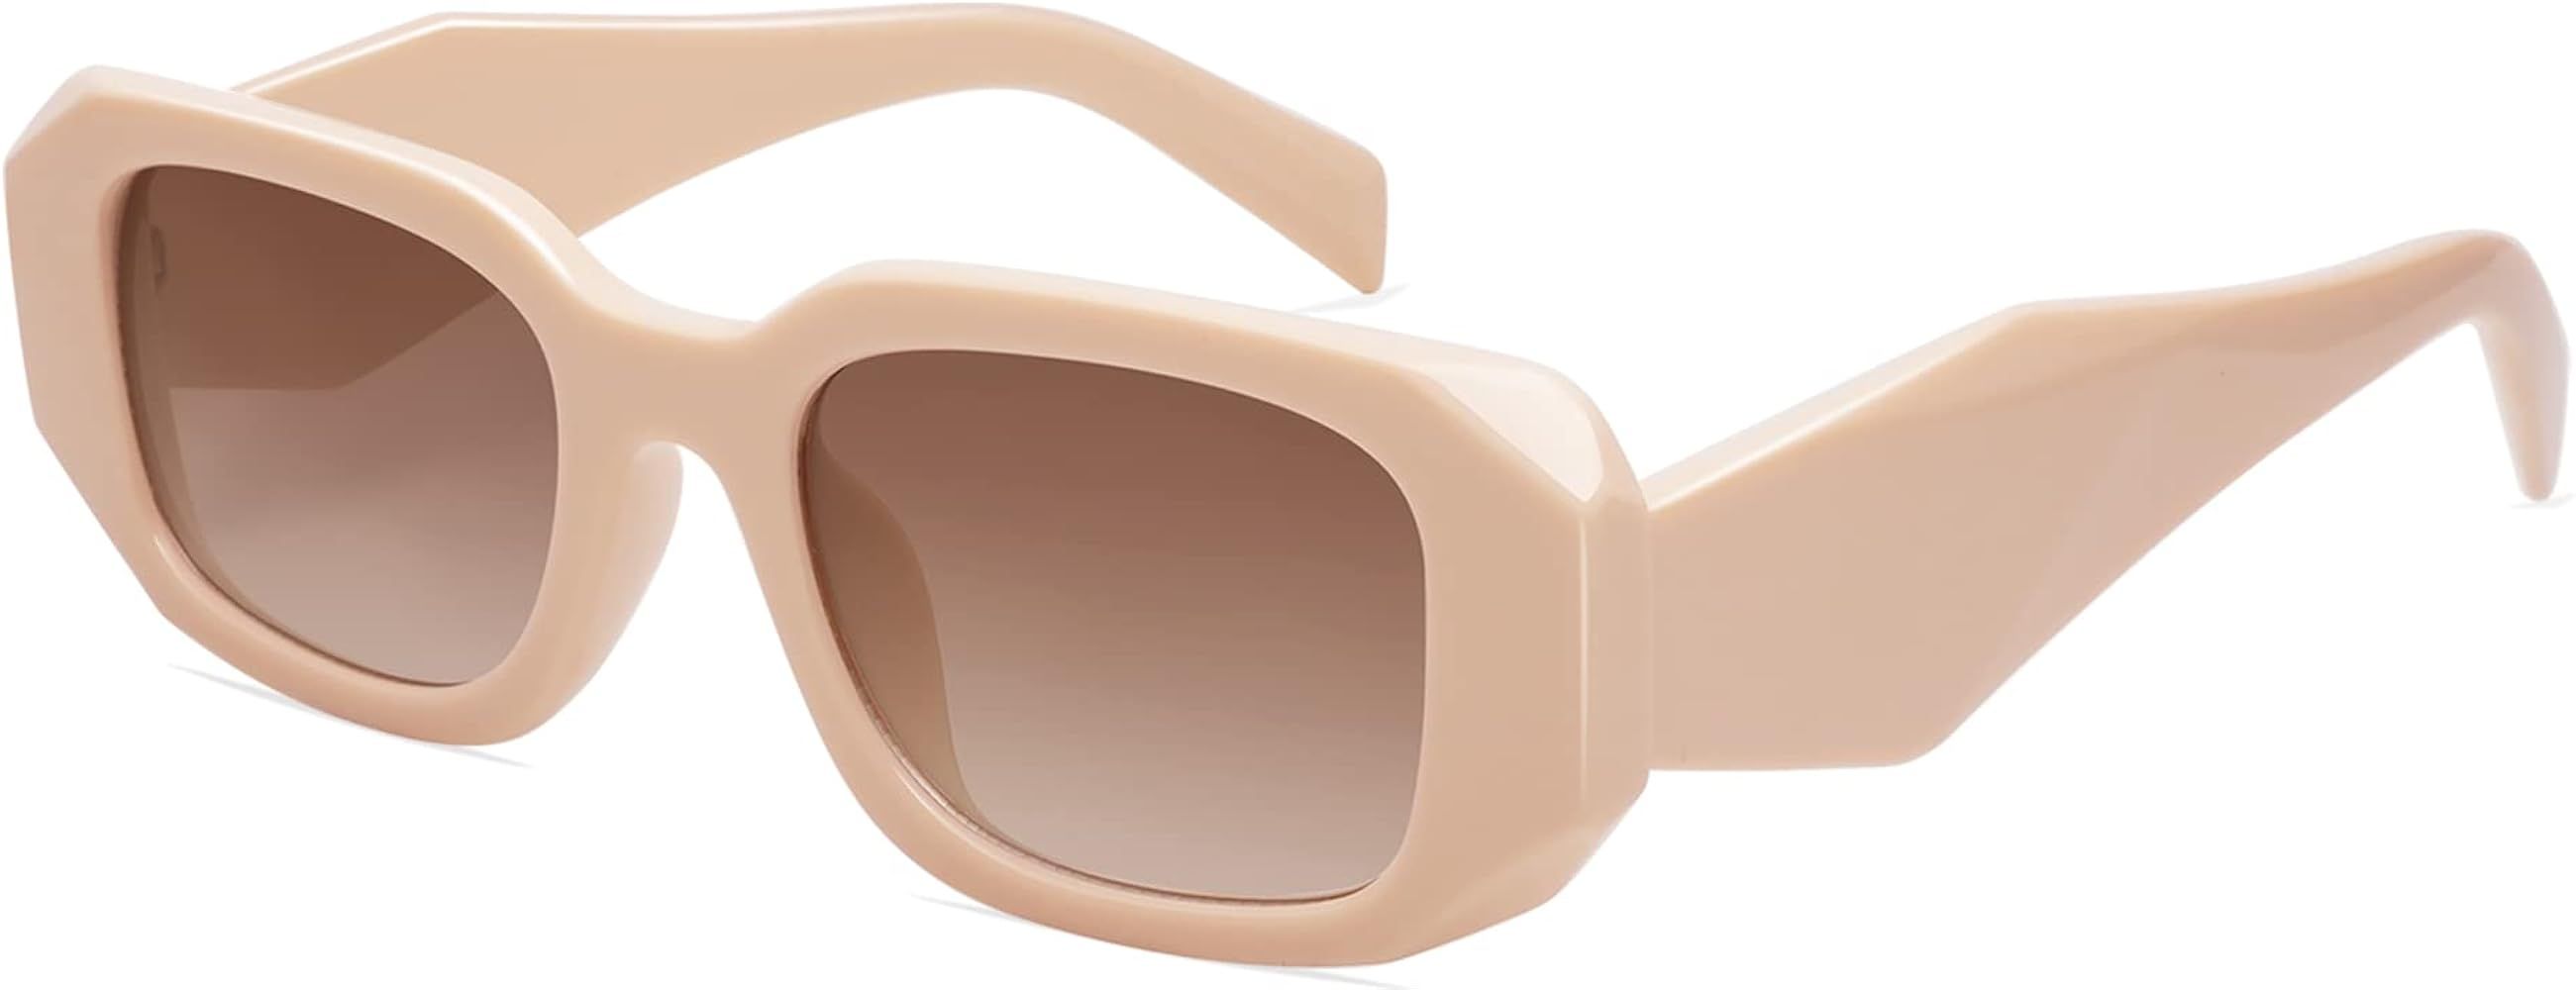 VANLINKER Trendy Rectangle Sunglasses for Women Men Retro Geometric Frame Vintage 90s Square Eyewear | Amazon (US)